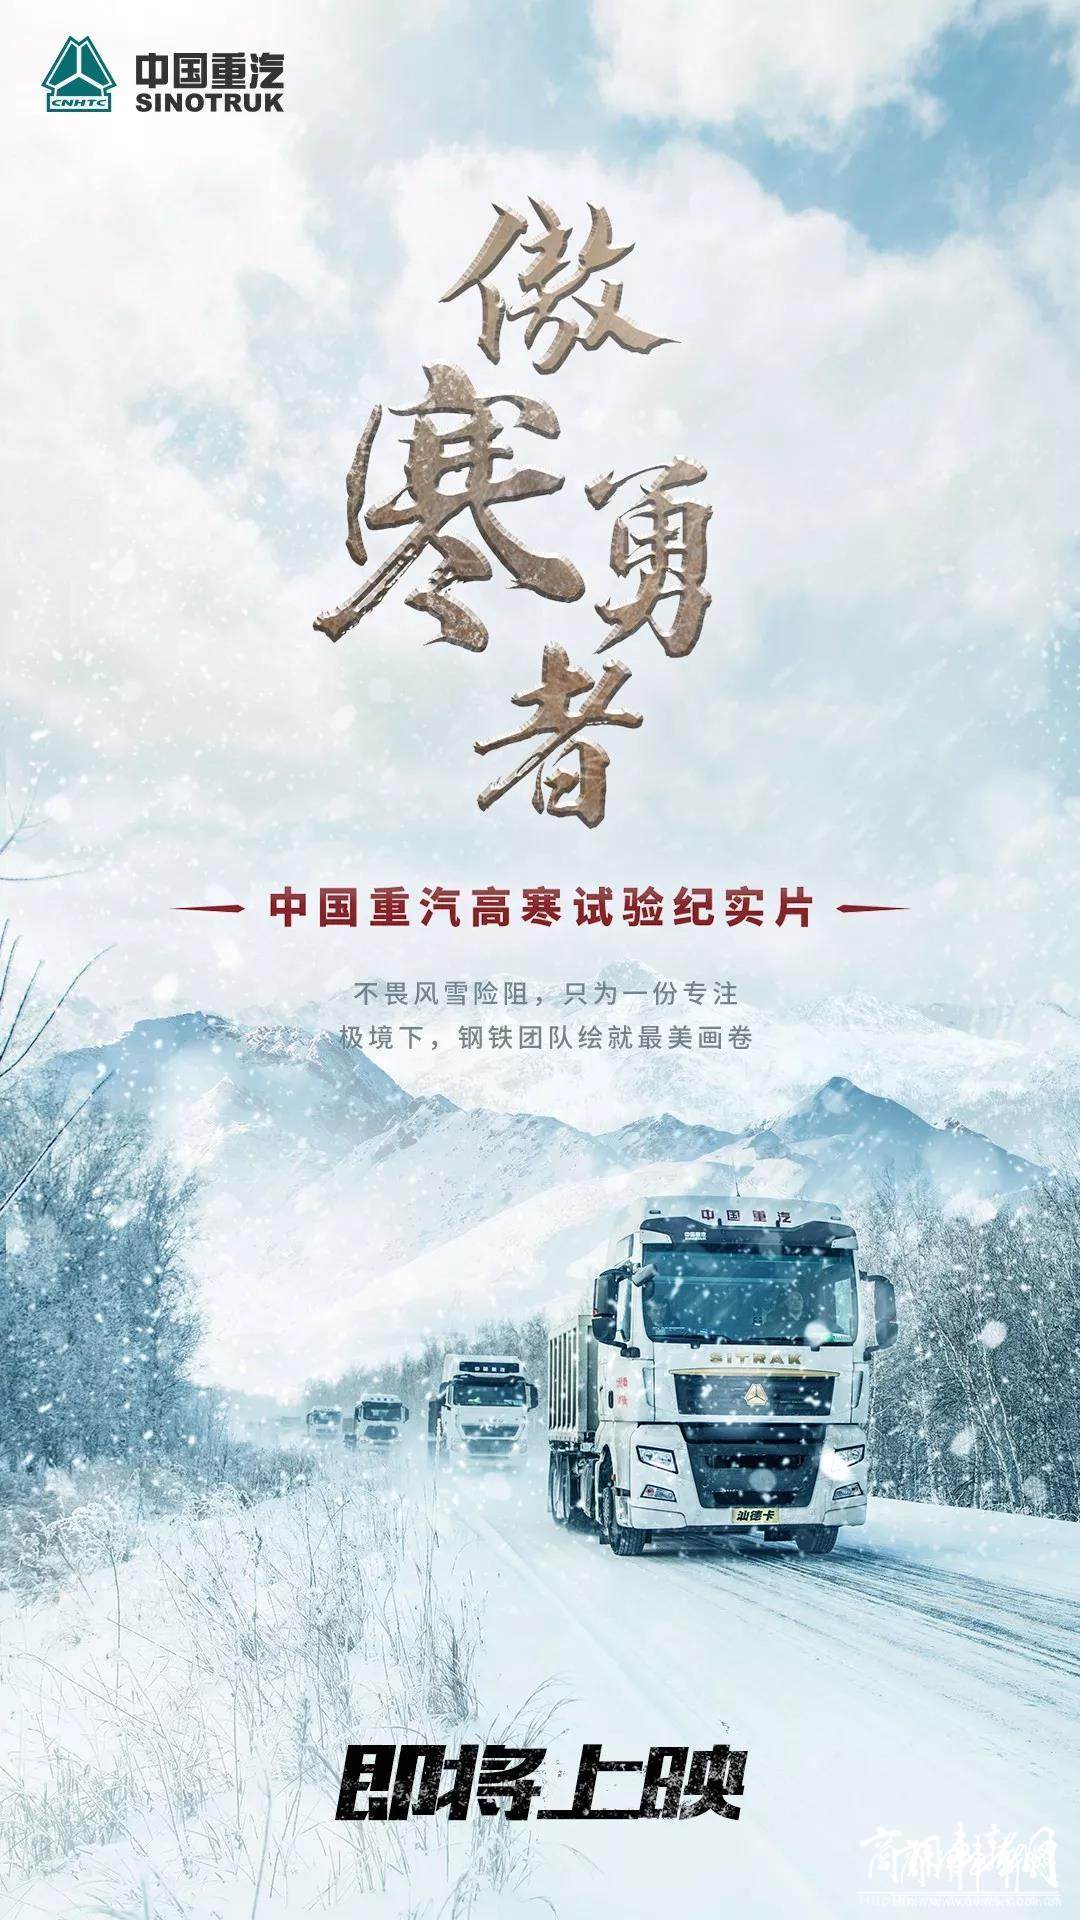 中国重汽高寒实验纪实片《傲寒勇者》即将上映